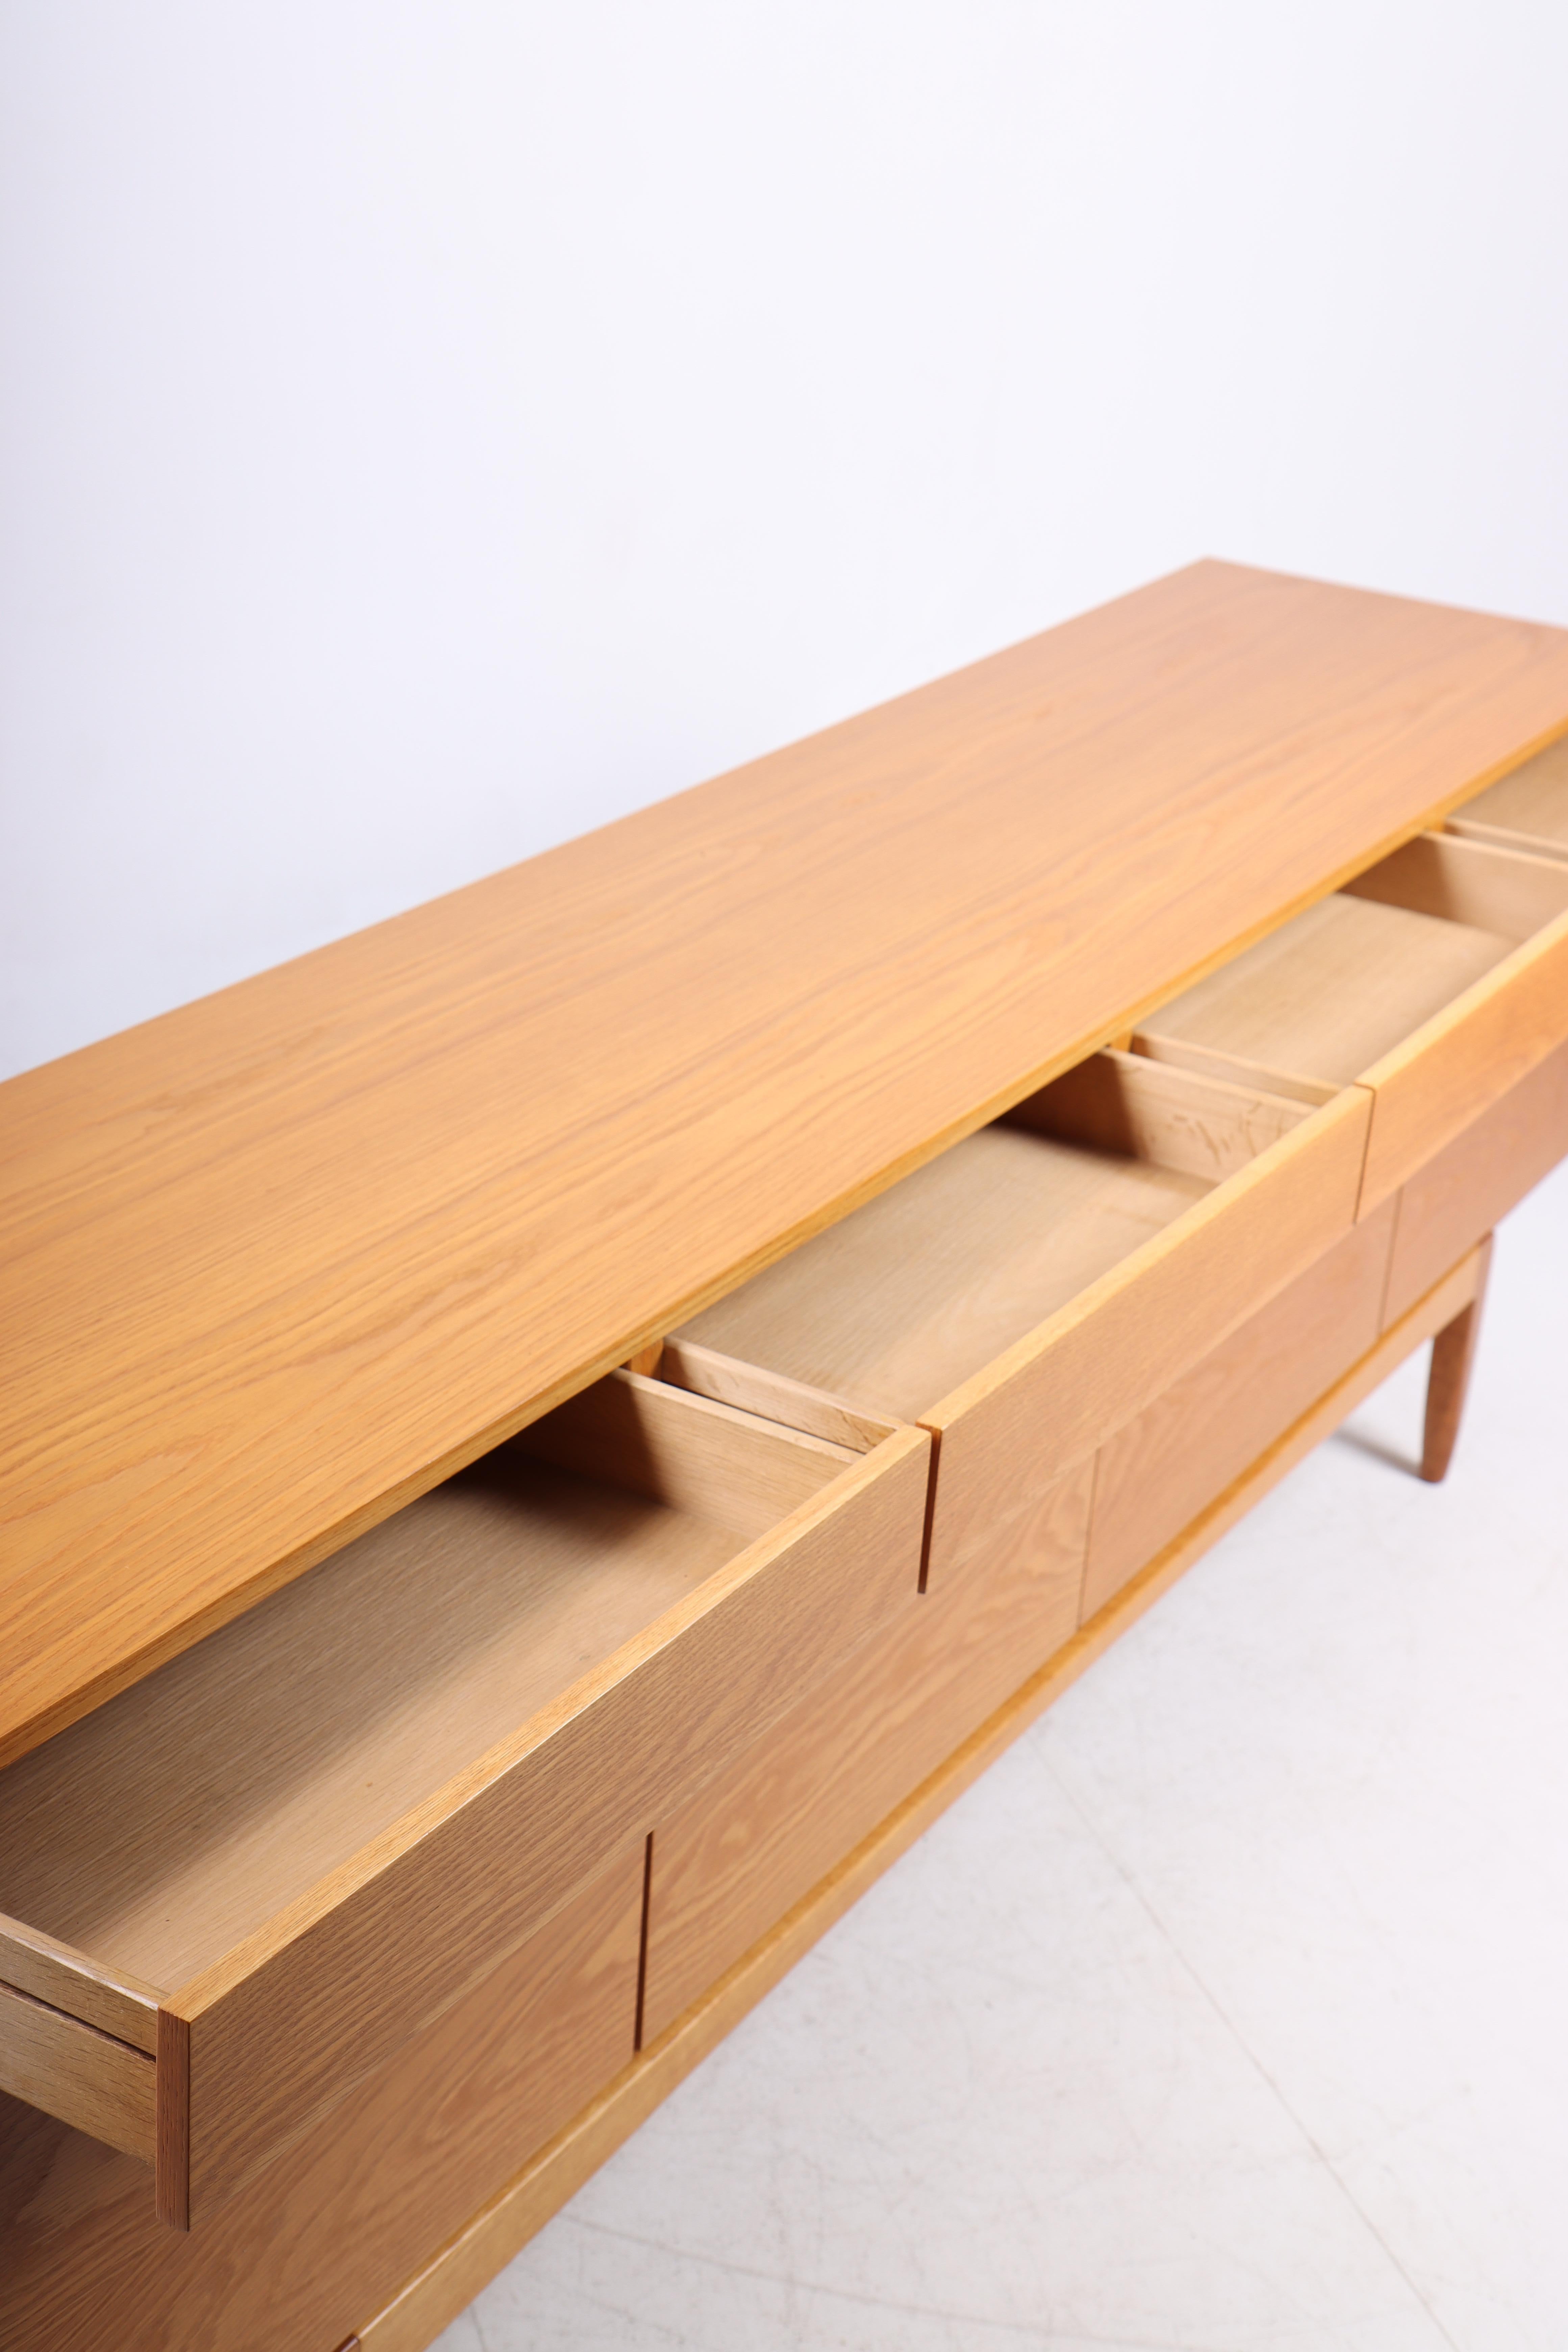 Danish Midcentury Sideboard in Oak Designed by Ib Kofod-Larsen, 1960s For Sale 5